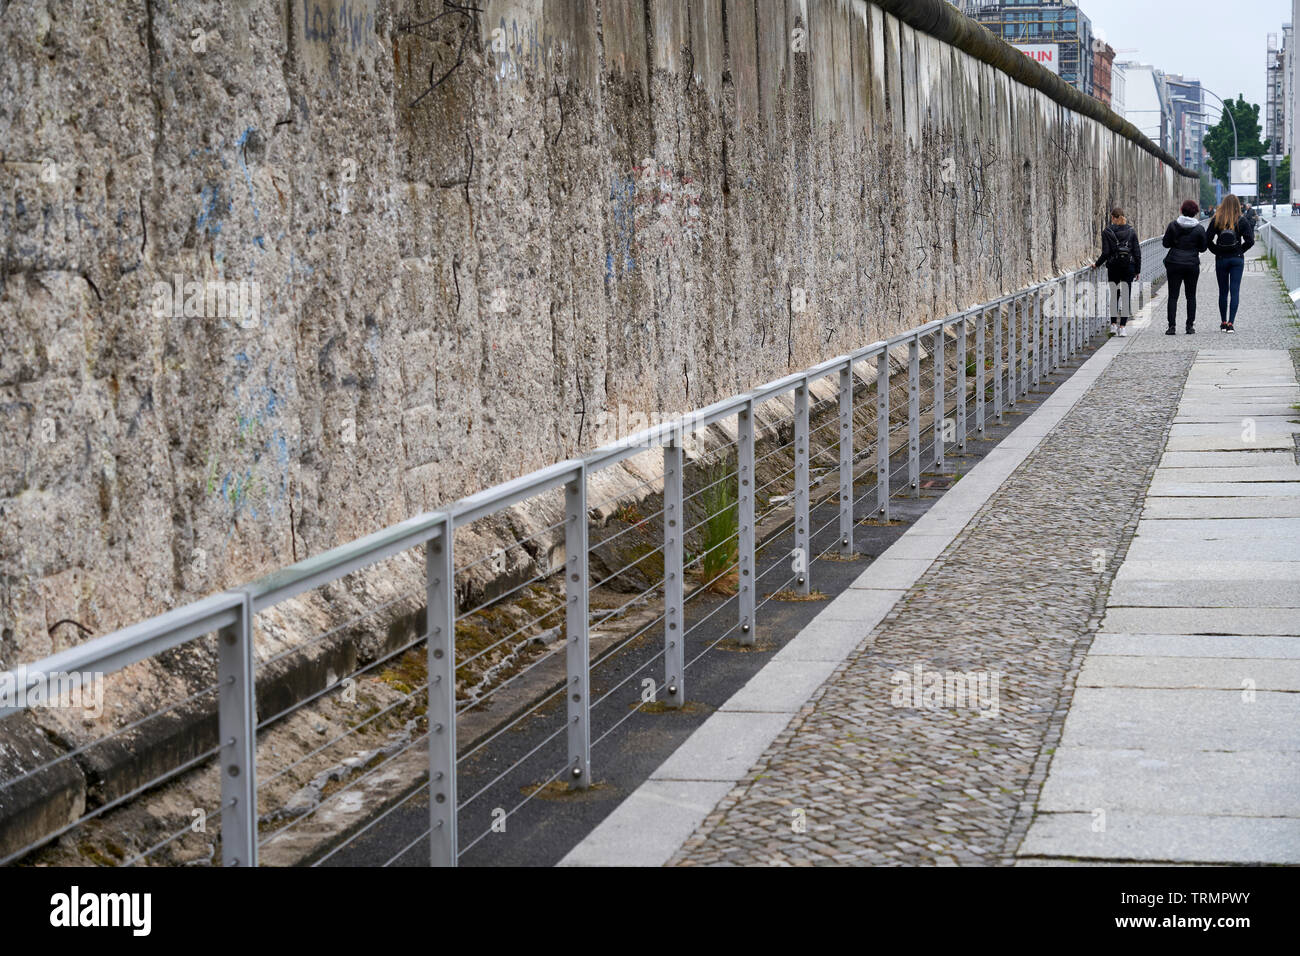 Une partie du mur de Berlin, à côté de l'exposition "Topographie de la terreur", une exposition sur le nazisme dans la seconde guerre mondiale. Banque D'Images